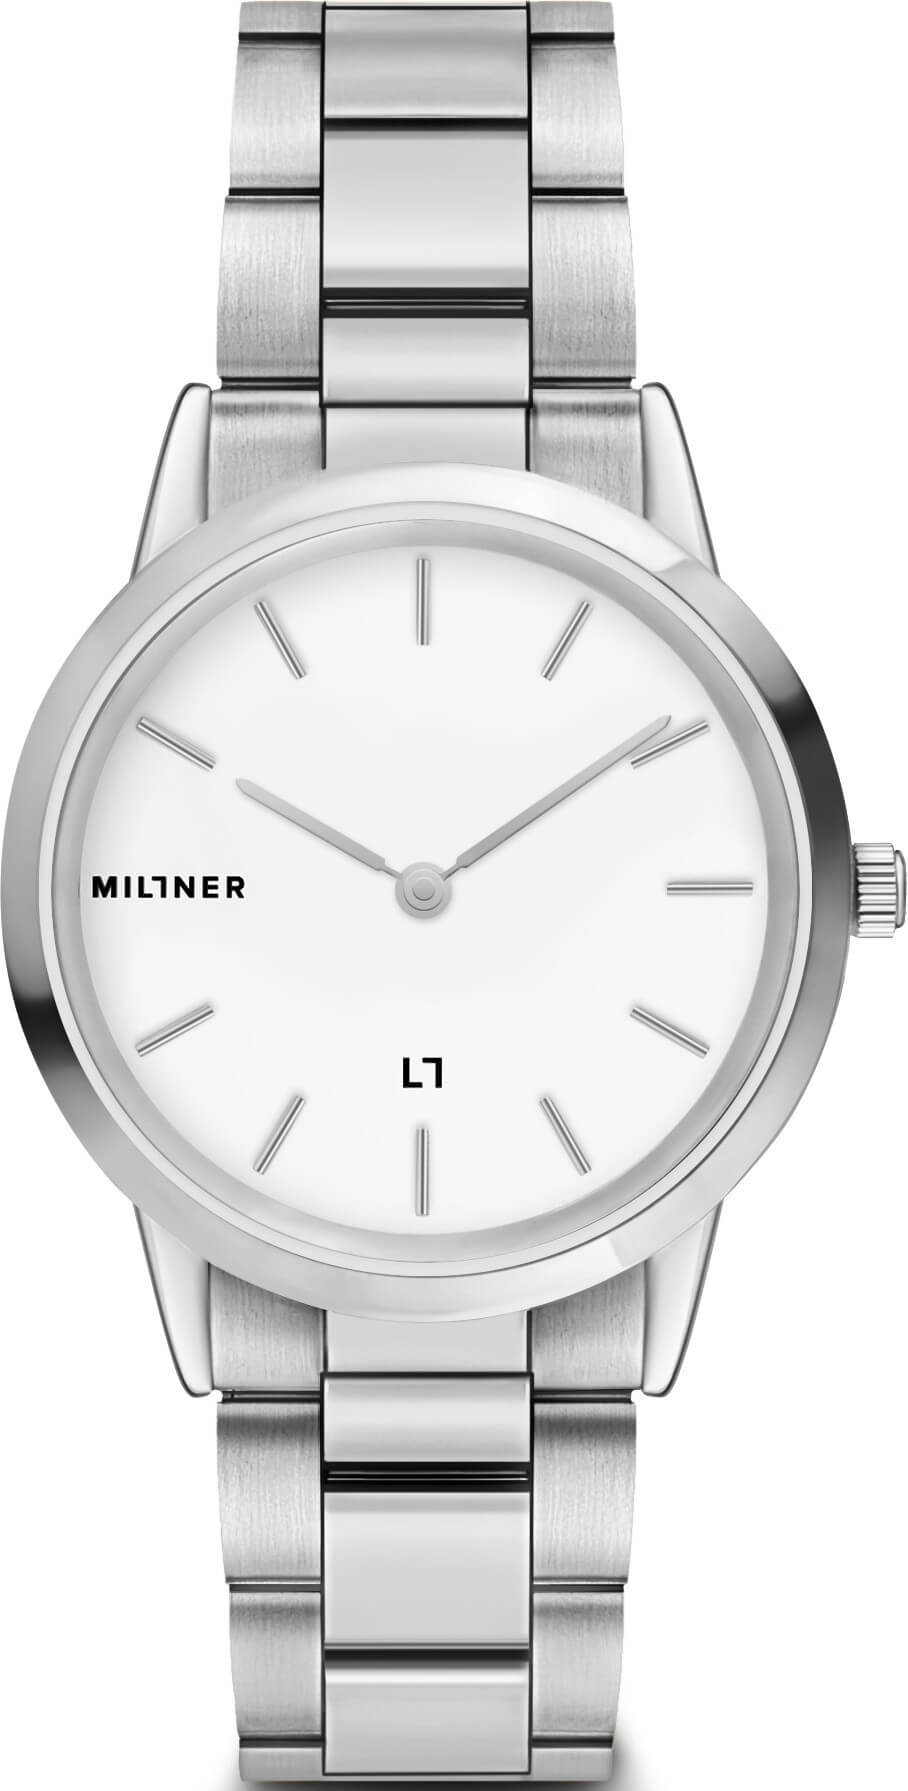 Millner Chelsea S - Silver